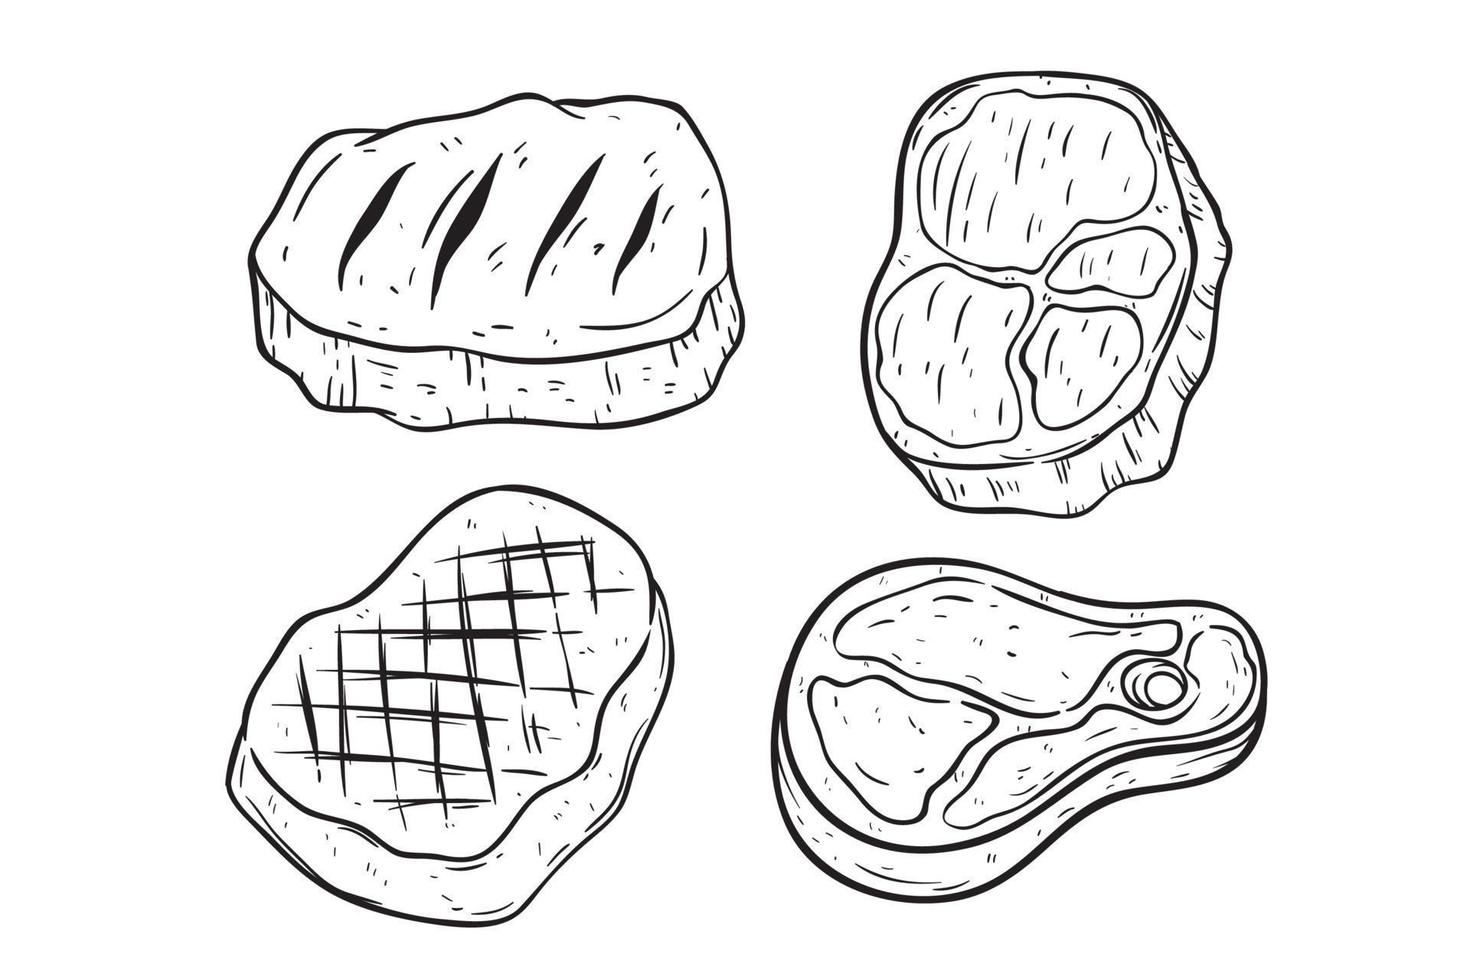 ensemble de dessin à la main de viande ou de steak sur fond blanc vecteur